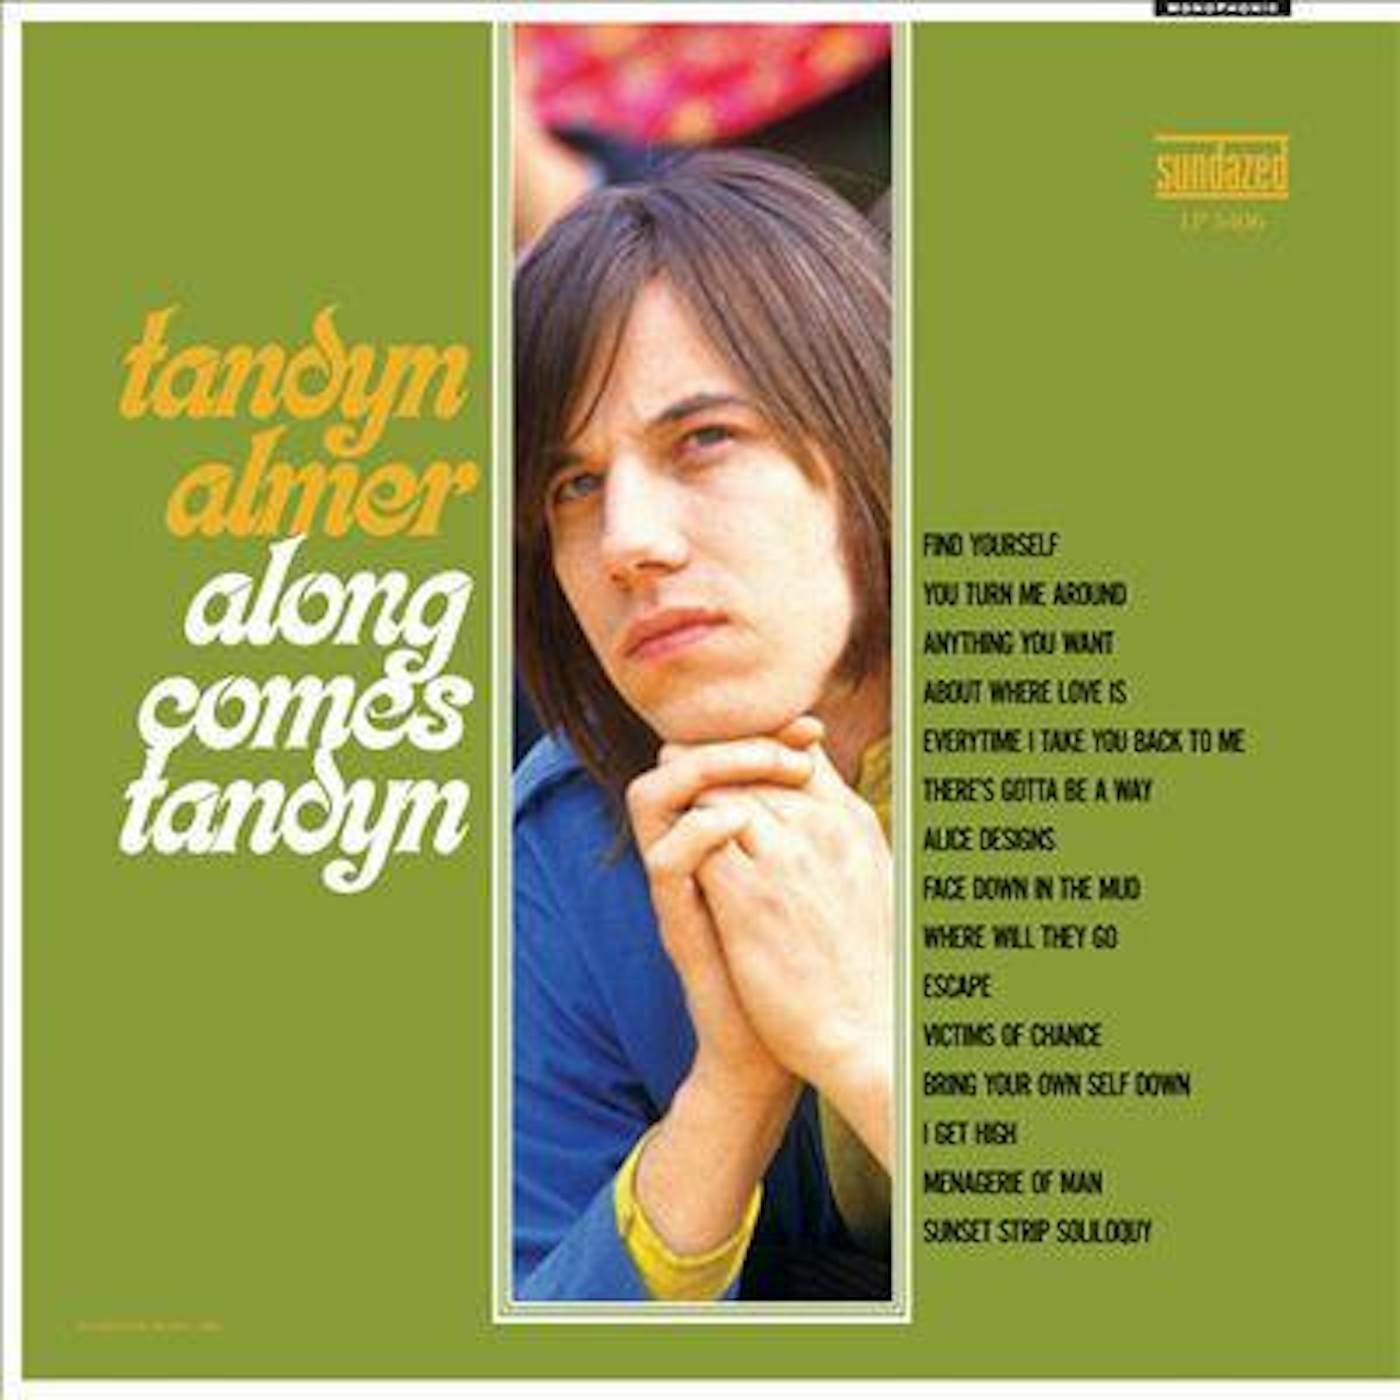 Tandyn Almer ALONG COMES TANDYN CD